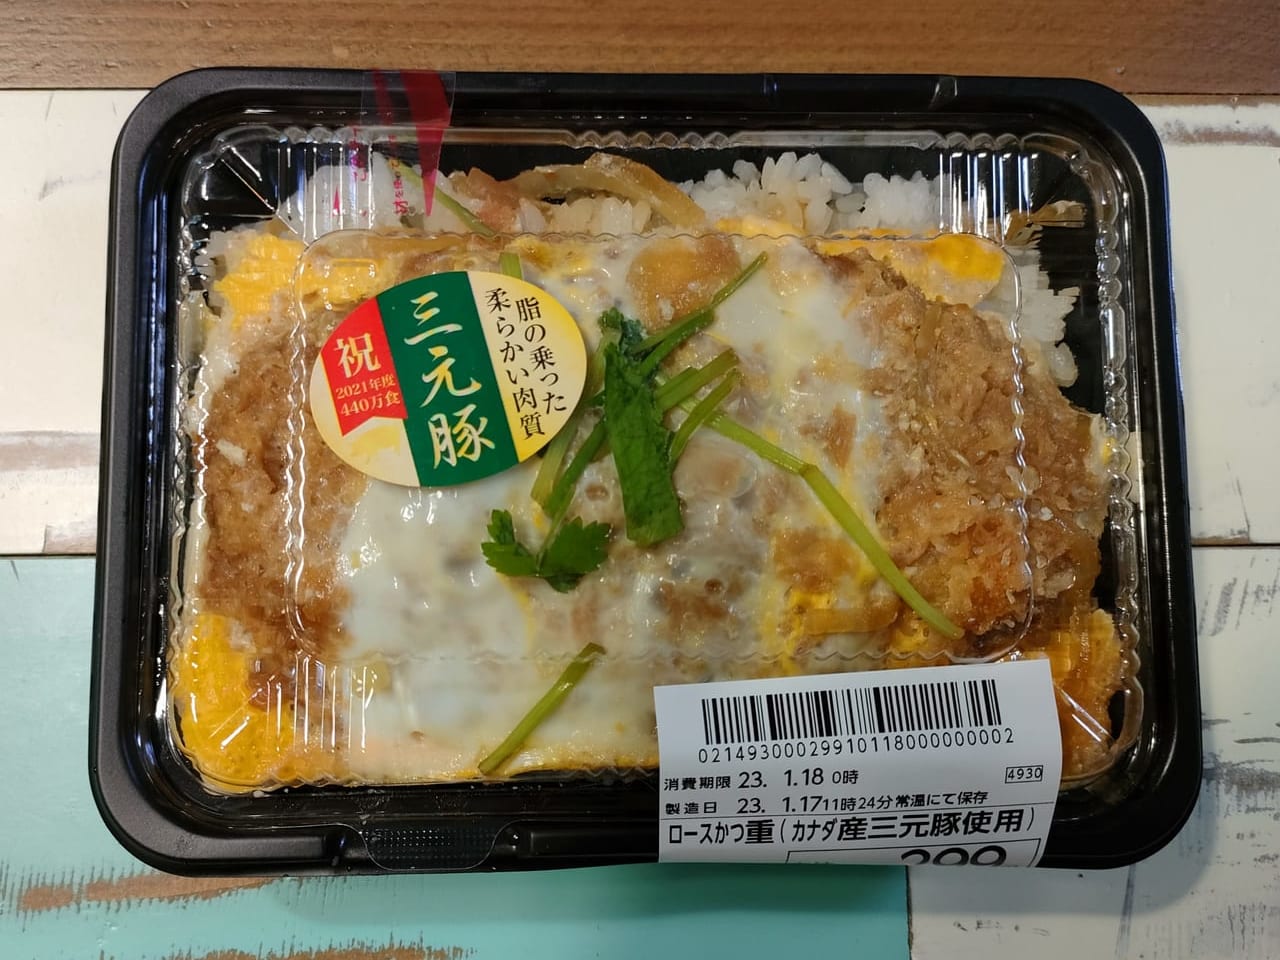 激安スーパー「オーケー 平塚店」で、440万食売れたという話題の「ロースかつ重」を買って食べてみました！